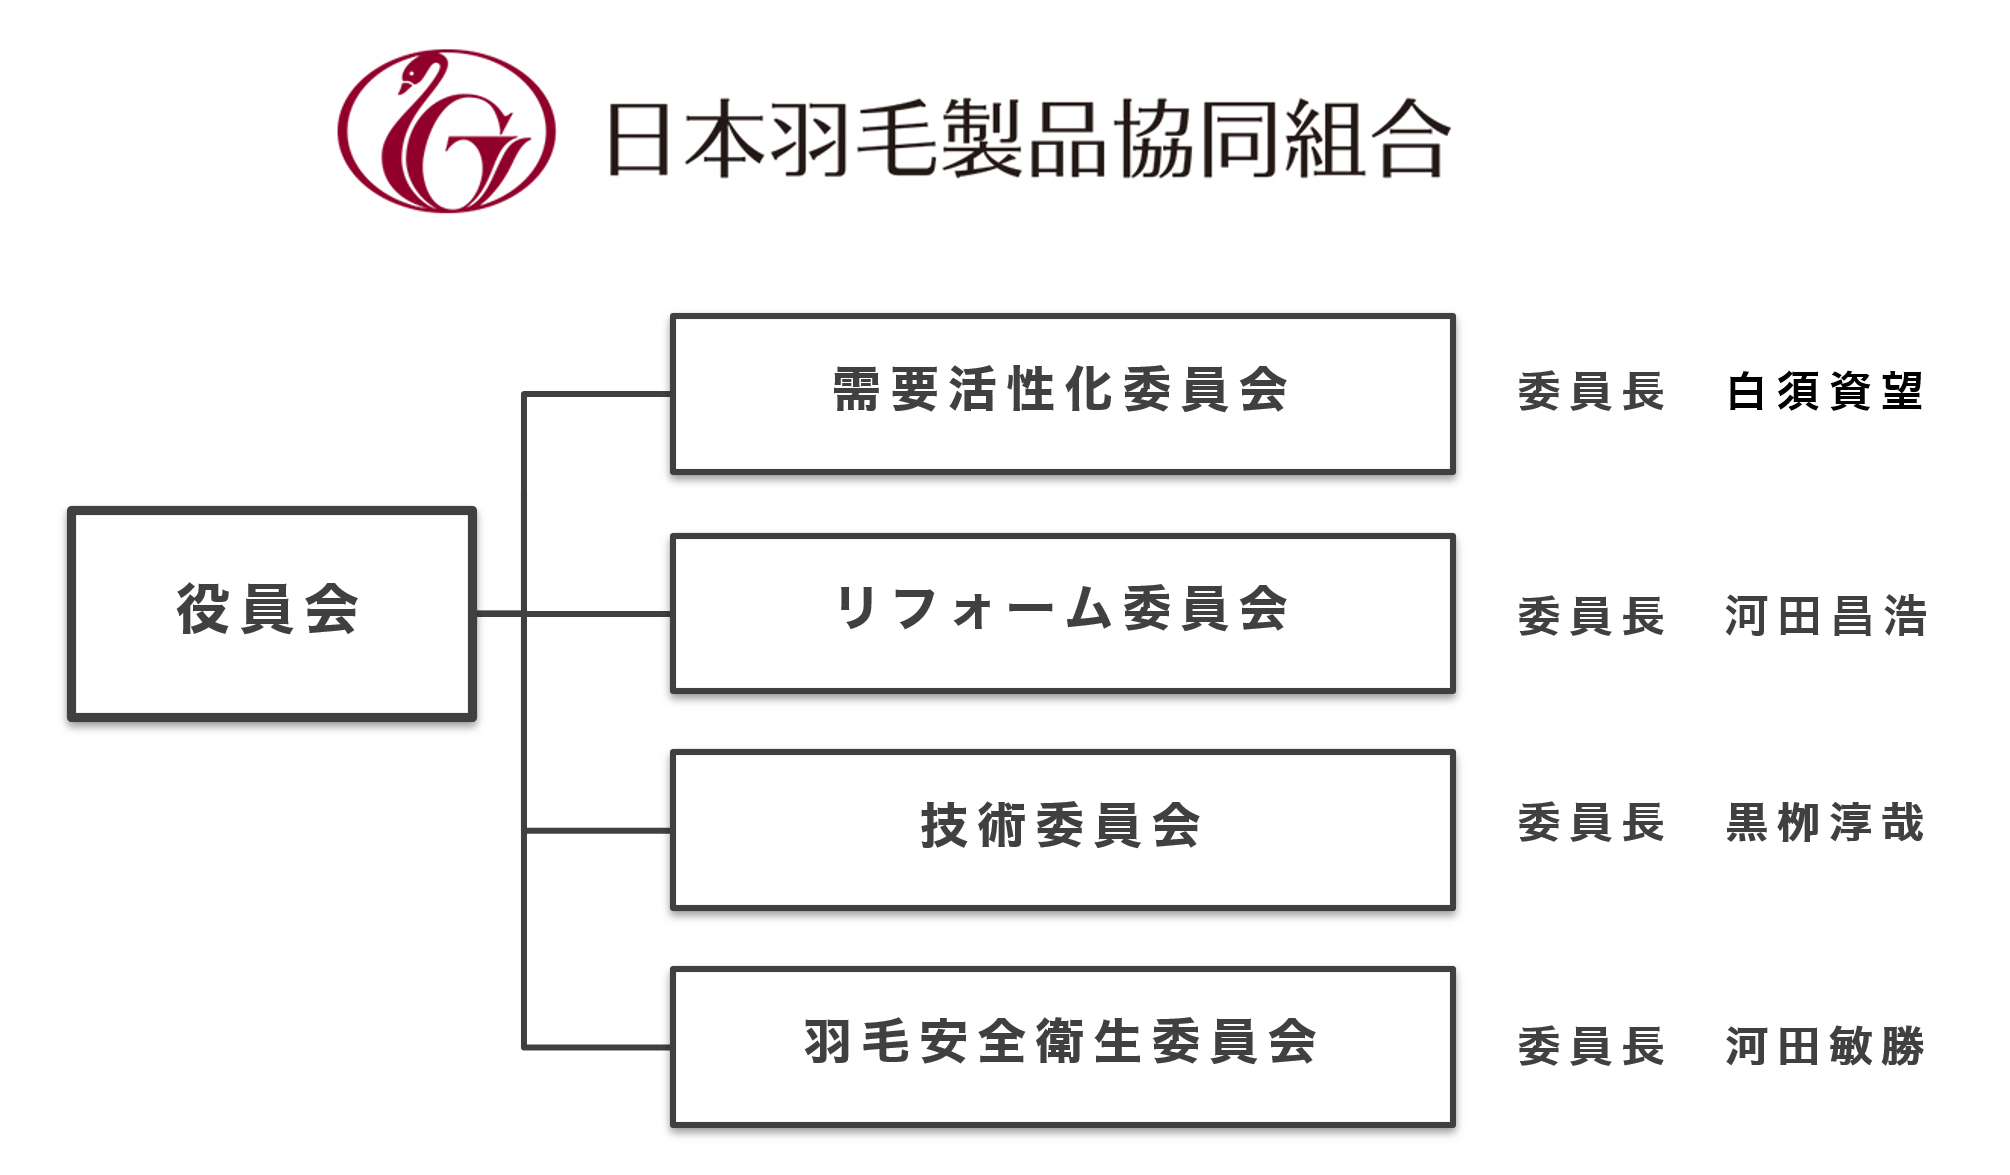 日本羽毛製品協同組合 組織図